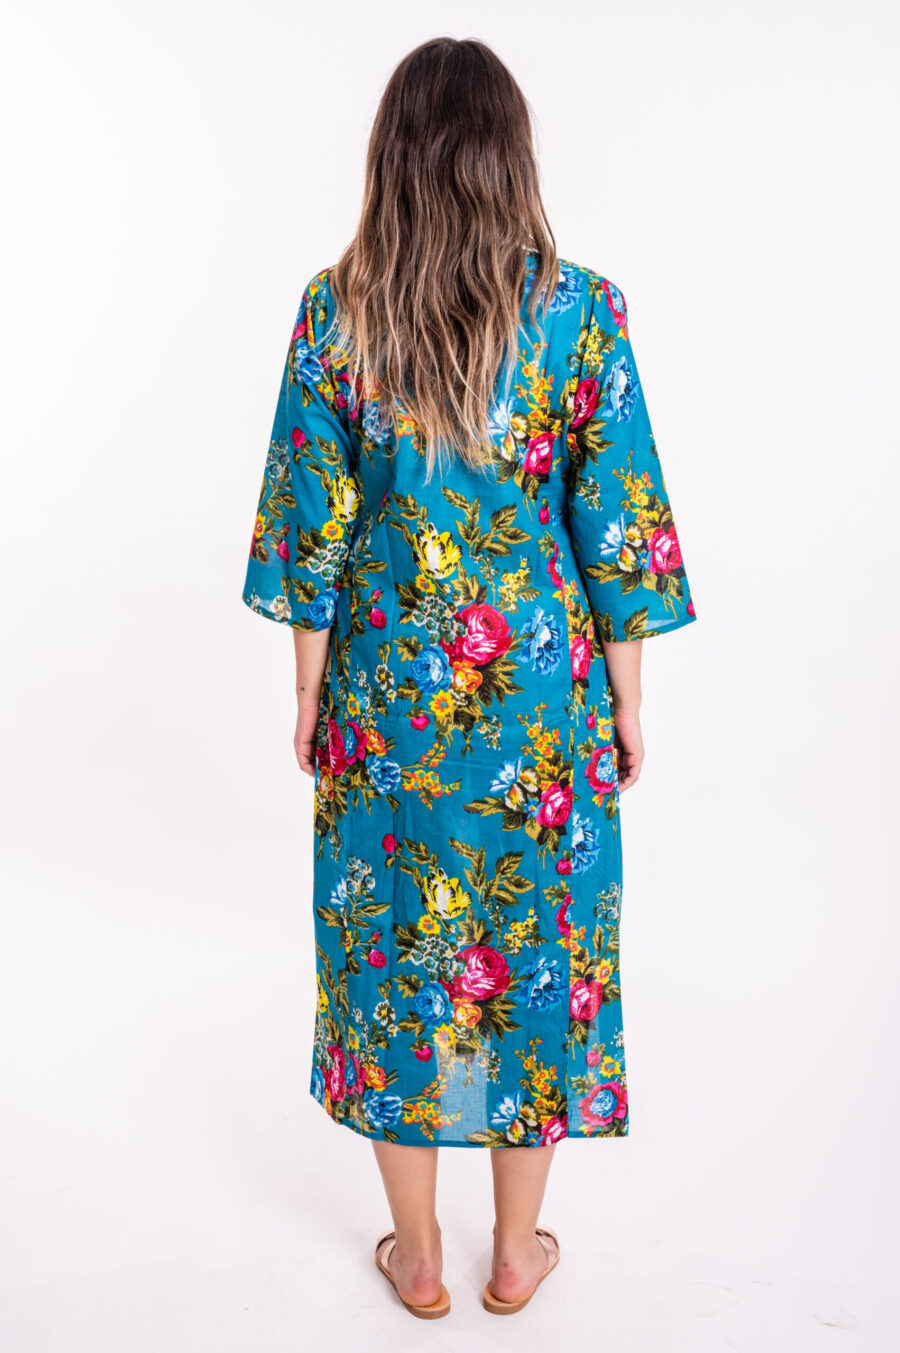 גלביה לנשים | גלבייה בעיצוב ייחודי - שמלה טורקיז עם הדפס פרחים צבעוני